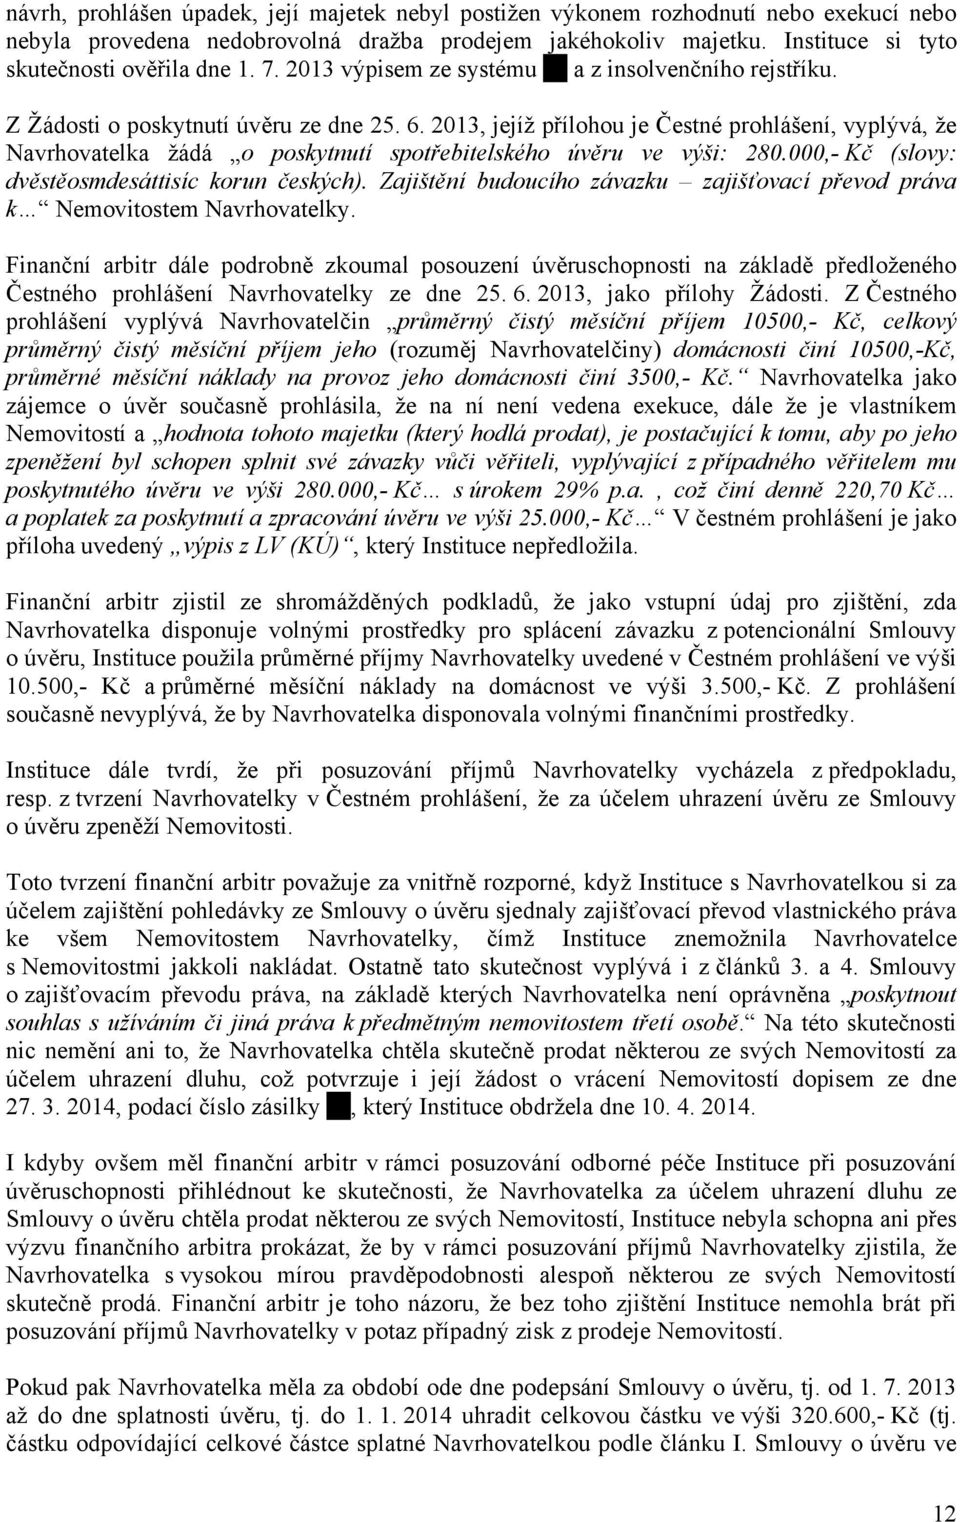 2013, jejíž přílohou je Čestné prohlášení, vyplývá, že Navrhovatelka žádá o poskytnutí spotřebitelského úvěru ve výši: 280.000,- Kč (slovy: dvěstěosmdesáttisíc korun českých).